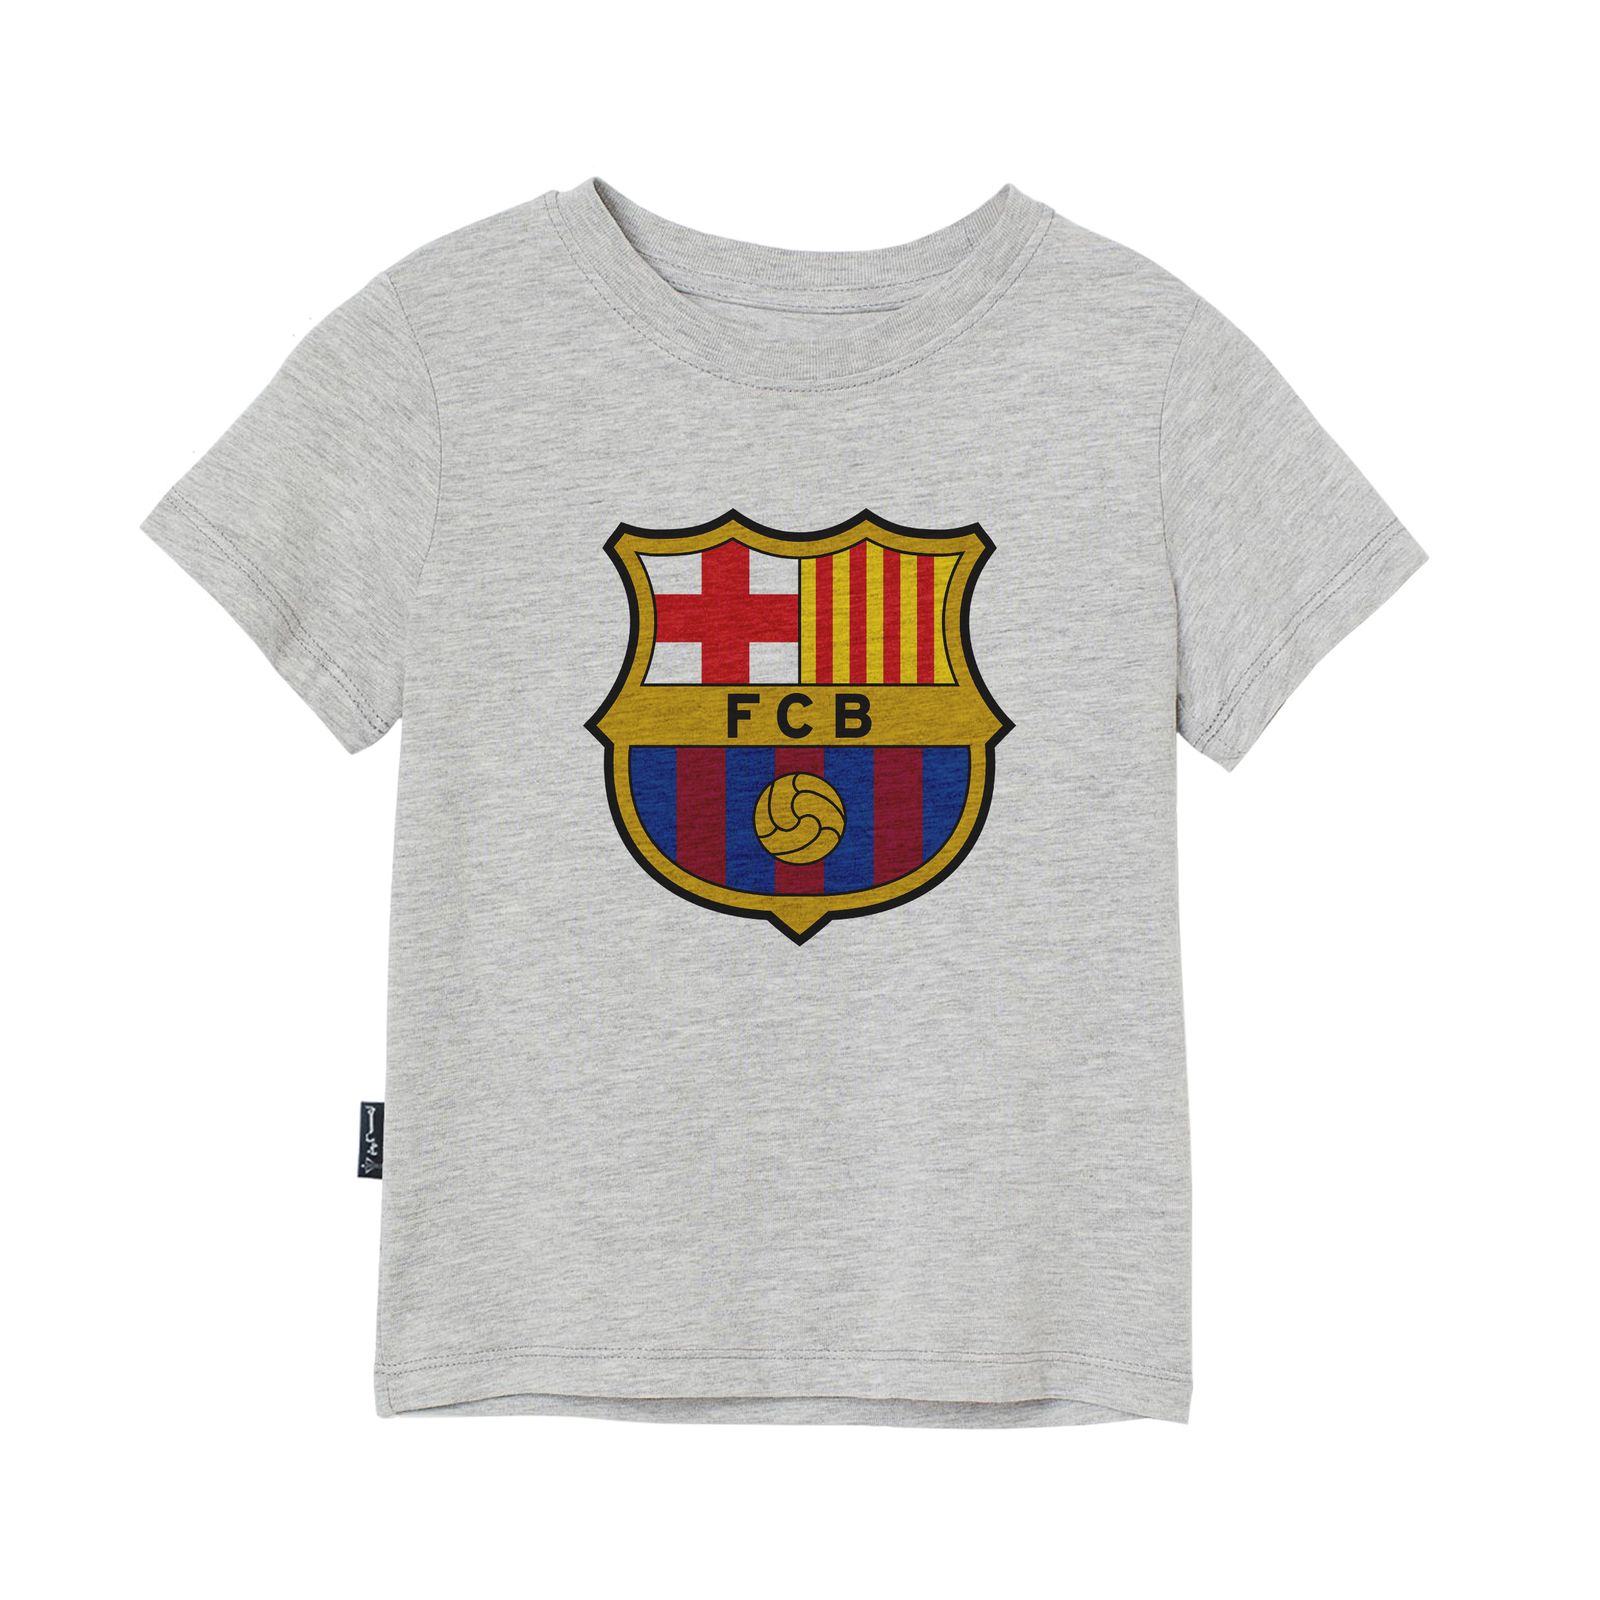 تی شرت آستین کوتاه پسرانه به رسم مدل بارسلونا کد 1113 -  - 1